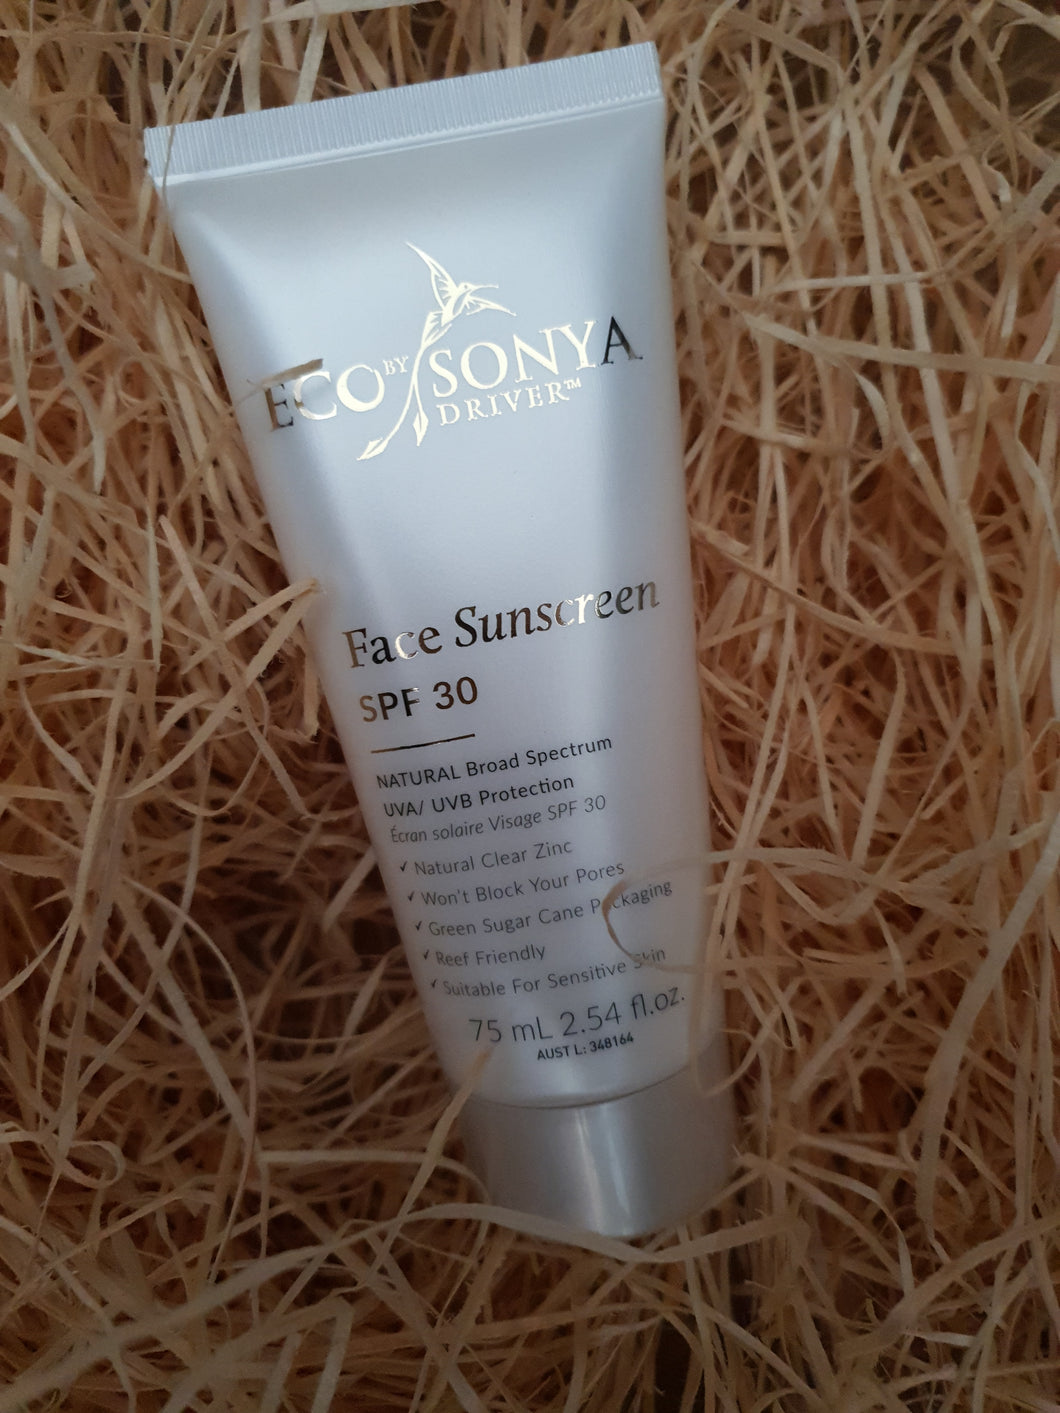 Face sunscreen Eco Sonya